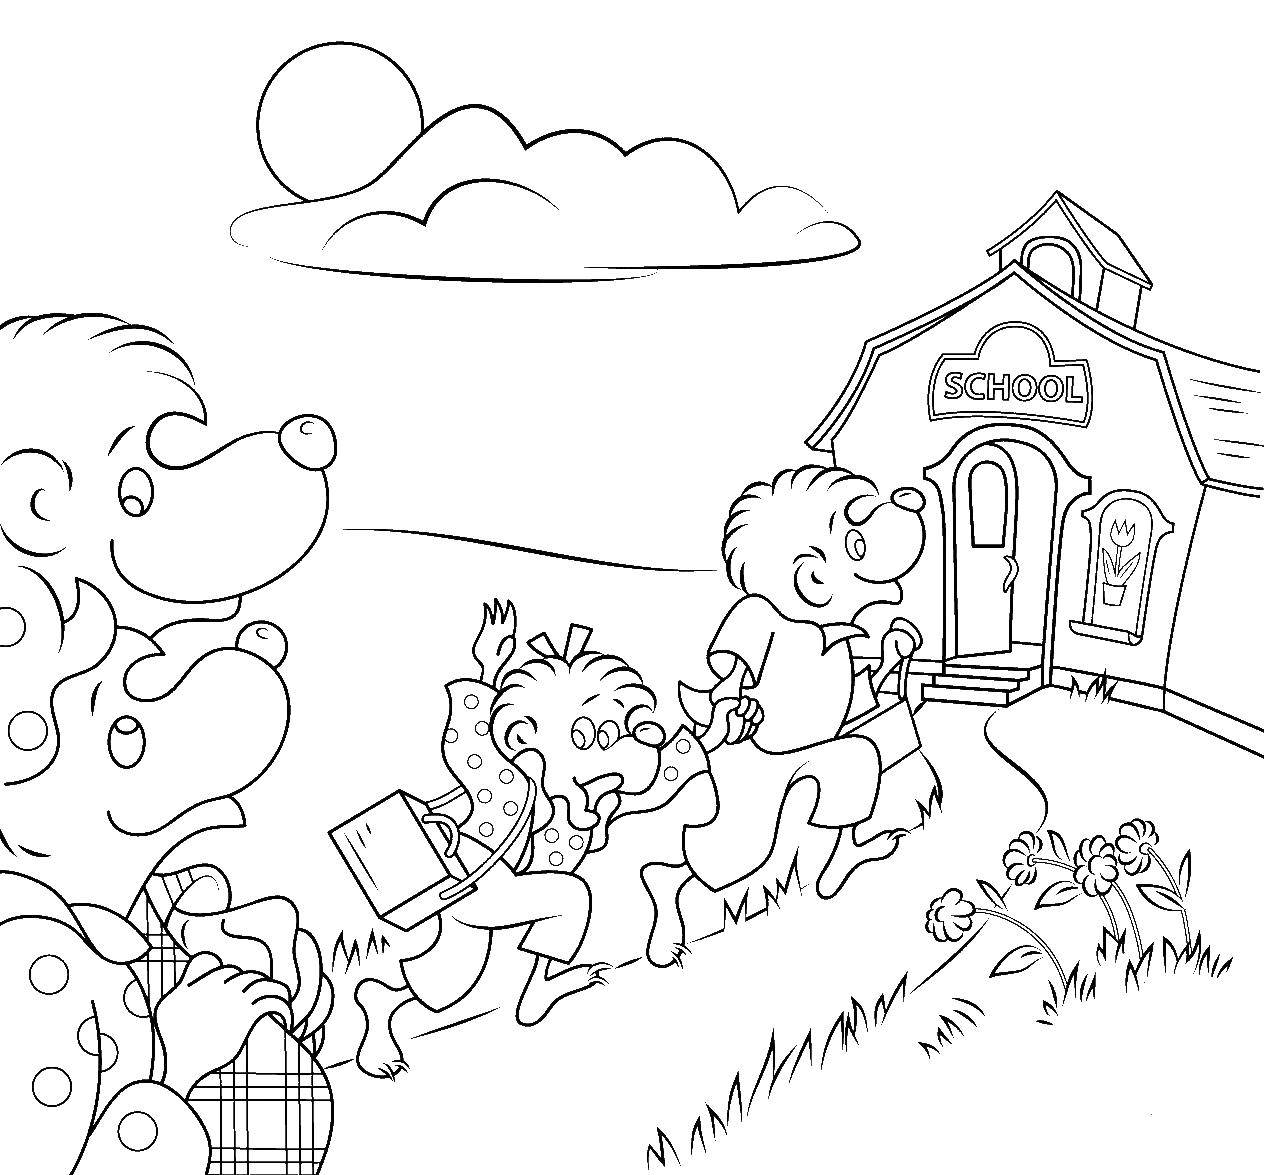 Раскраска из мультфильма для мальчиков на урок (школа, дети)